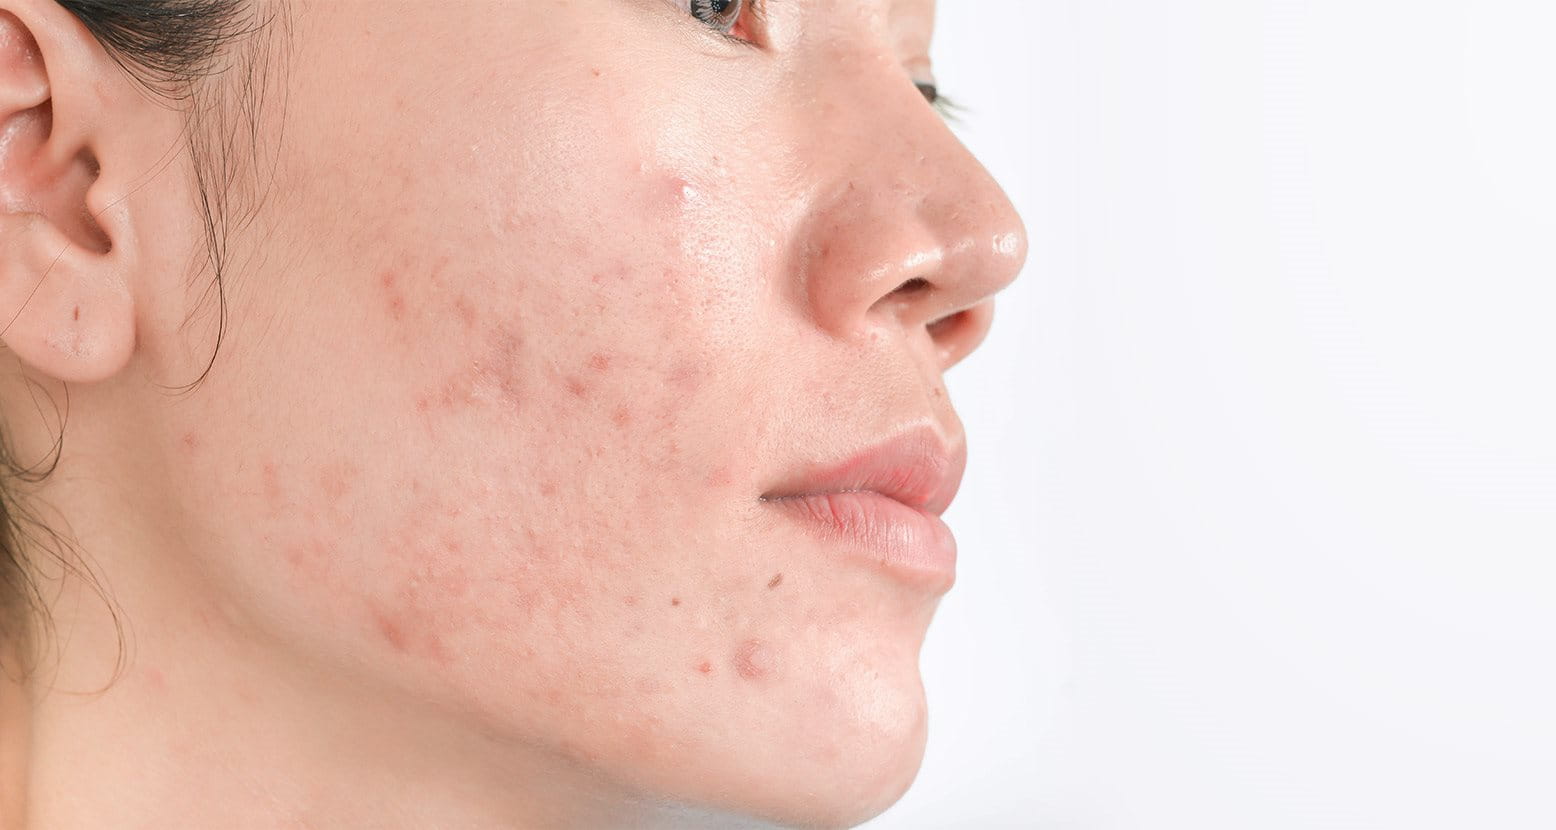 manchas en la piel por acne